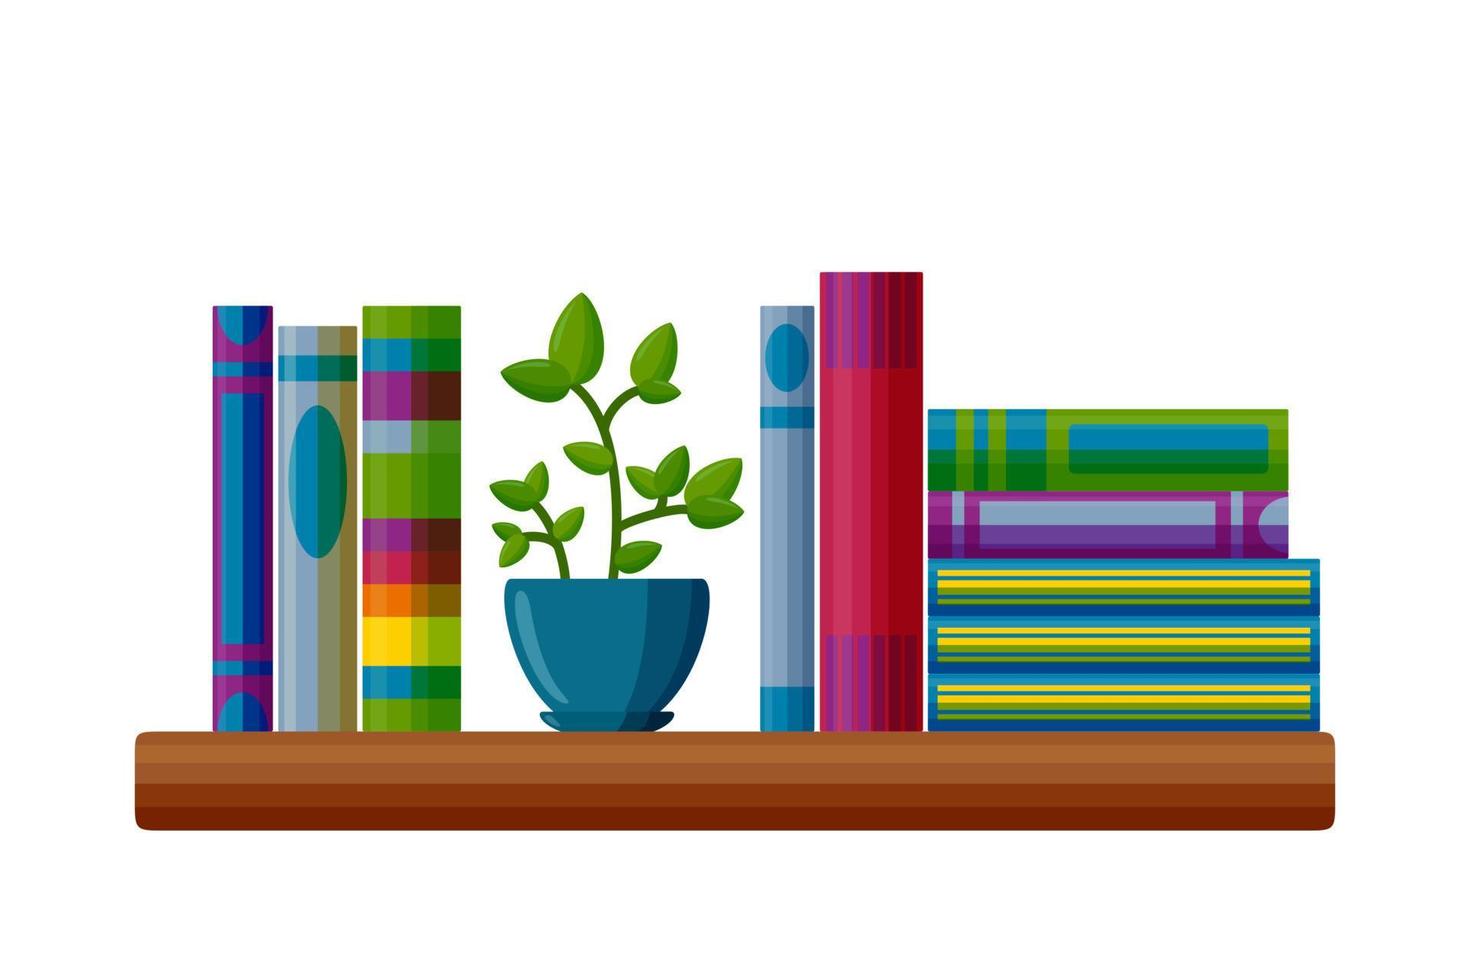 estante con libros y planta en maceta. libros en estilo de dibujos animados. ilustración vectorial vector